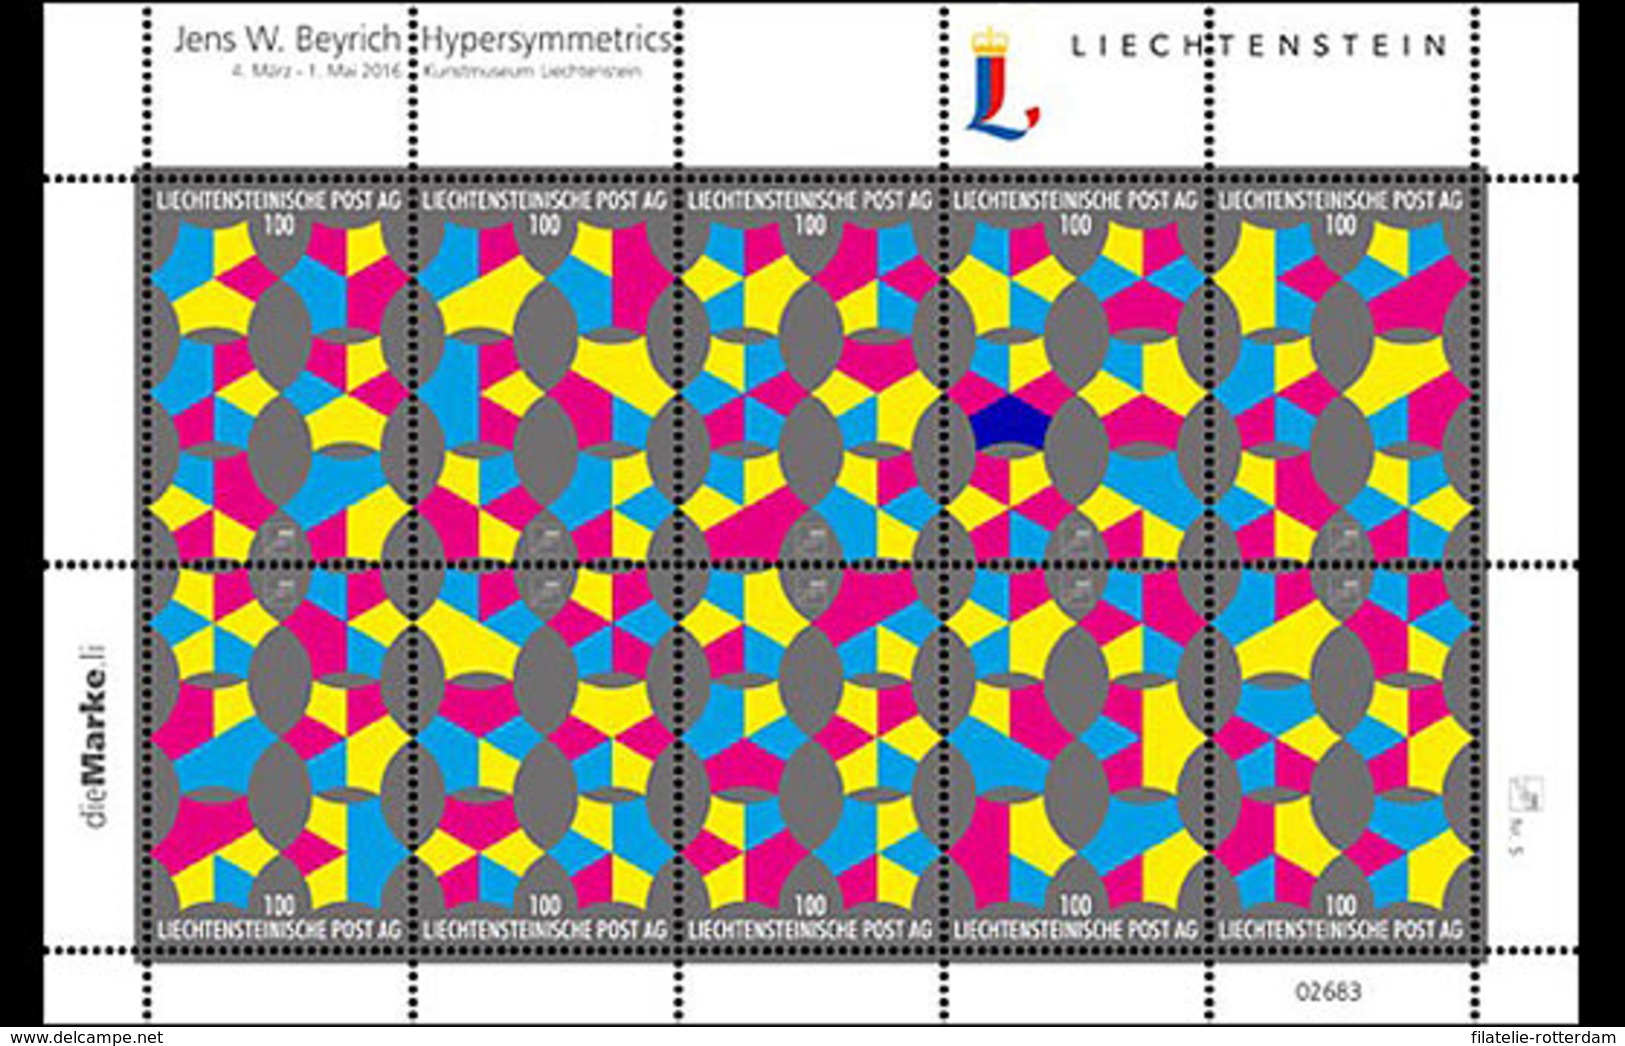 Liechtenstein - Postfris / MNH - Sheet Hypersymmetrie 2016 NEW!! - Ungebraucht